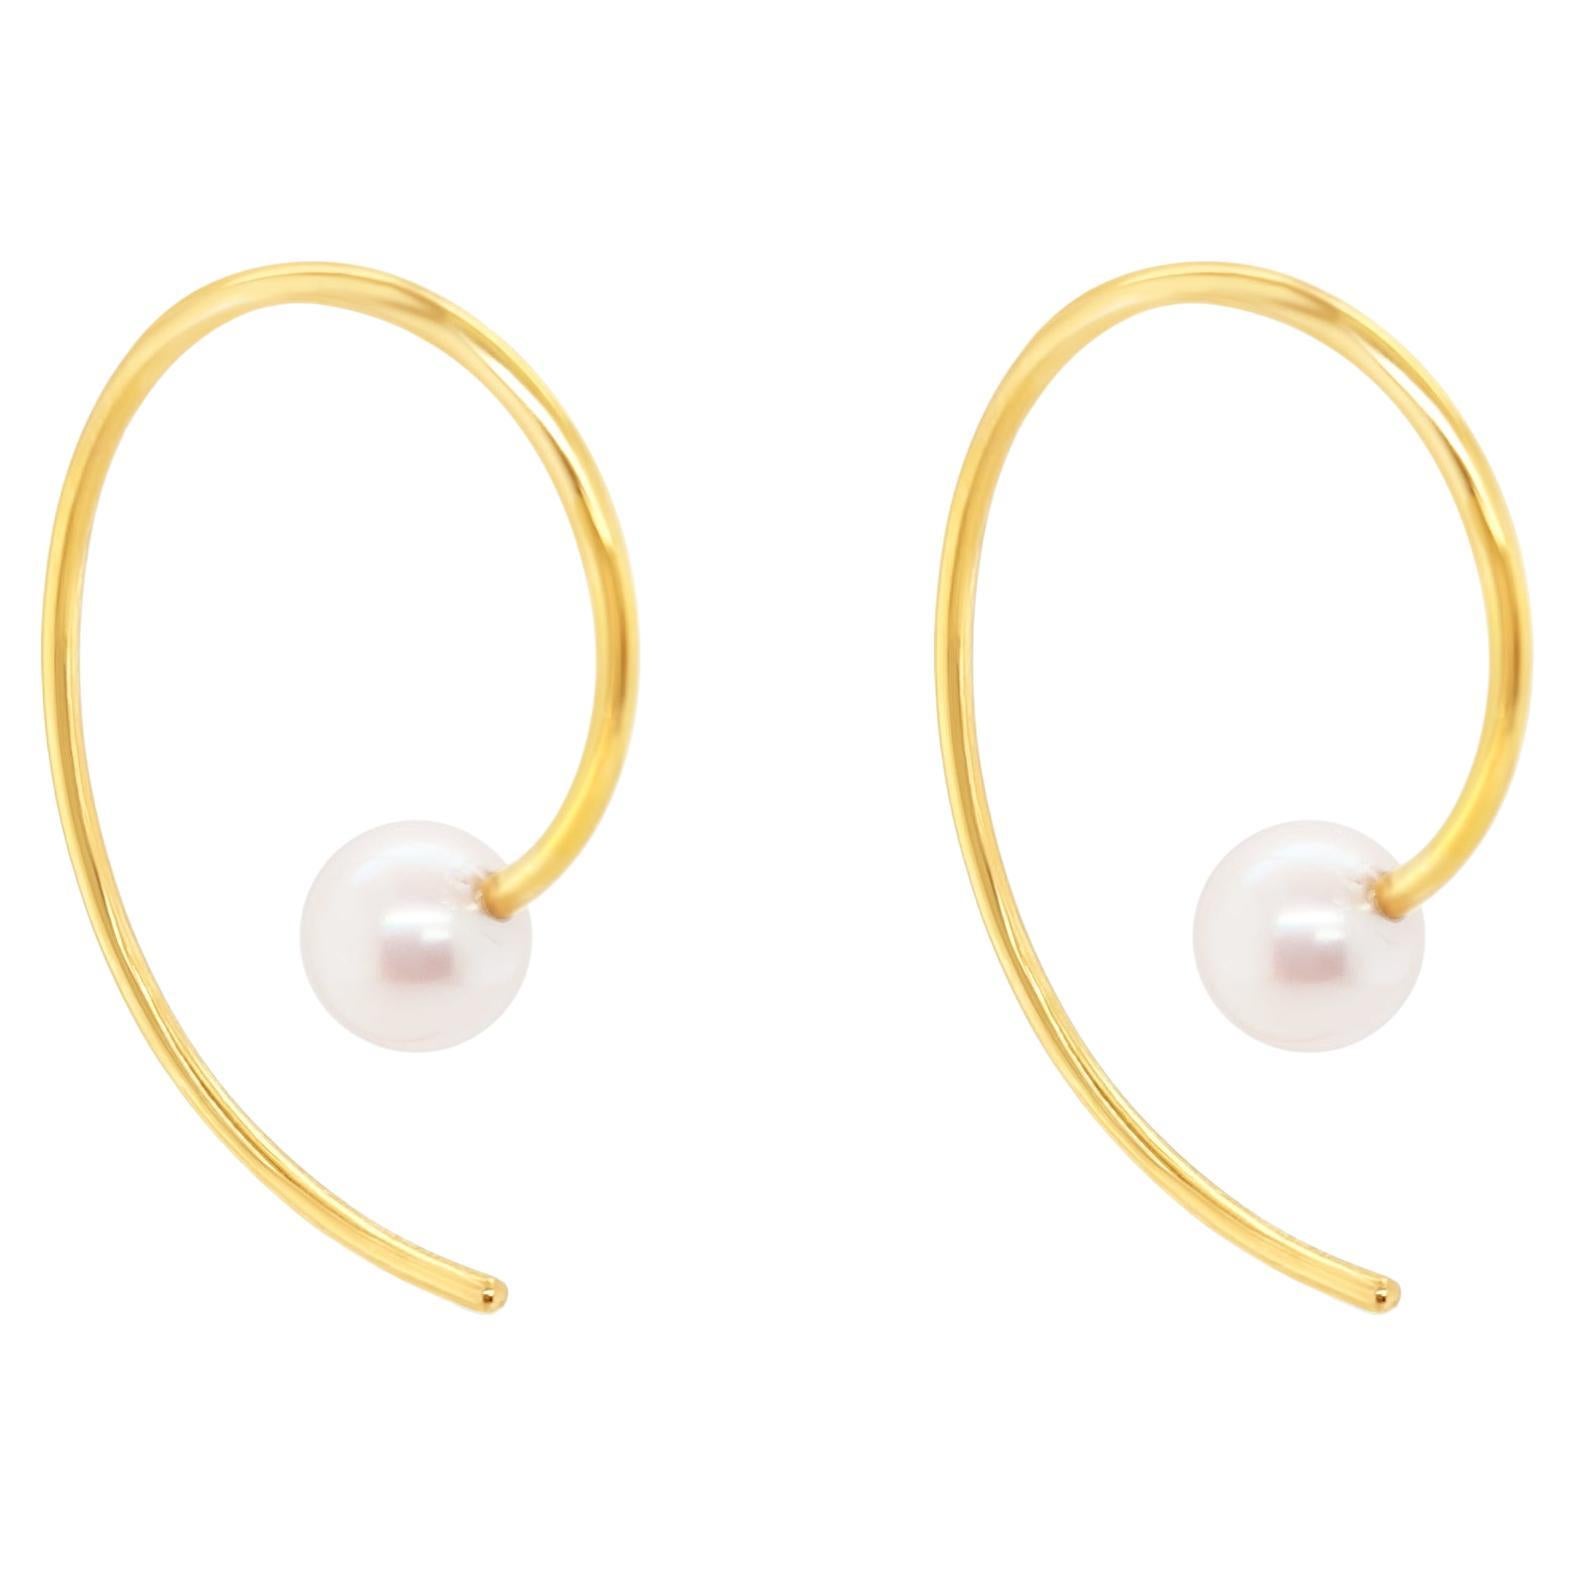 Boucles d'oreilles "Ella" en or jaune 18ct et perles